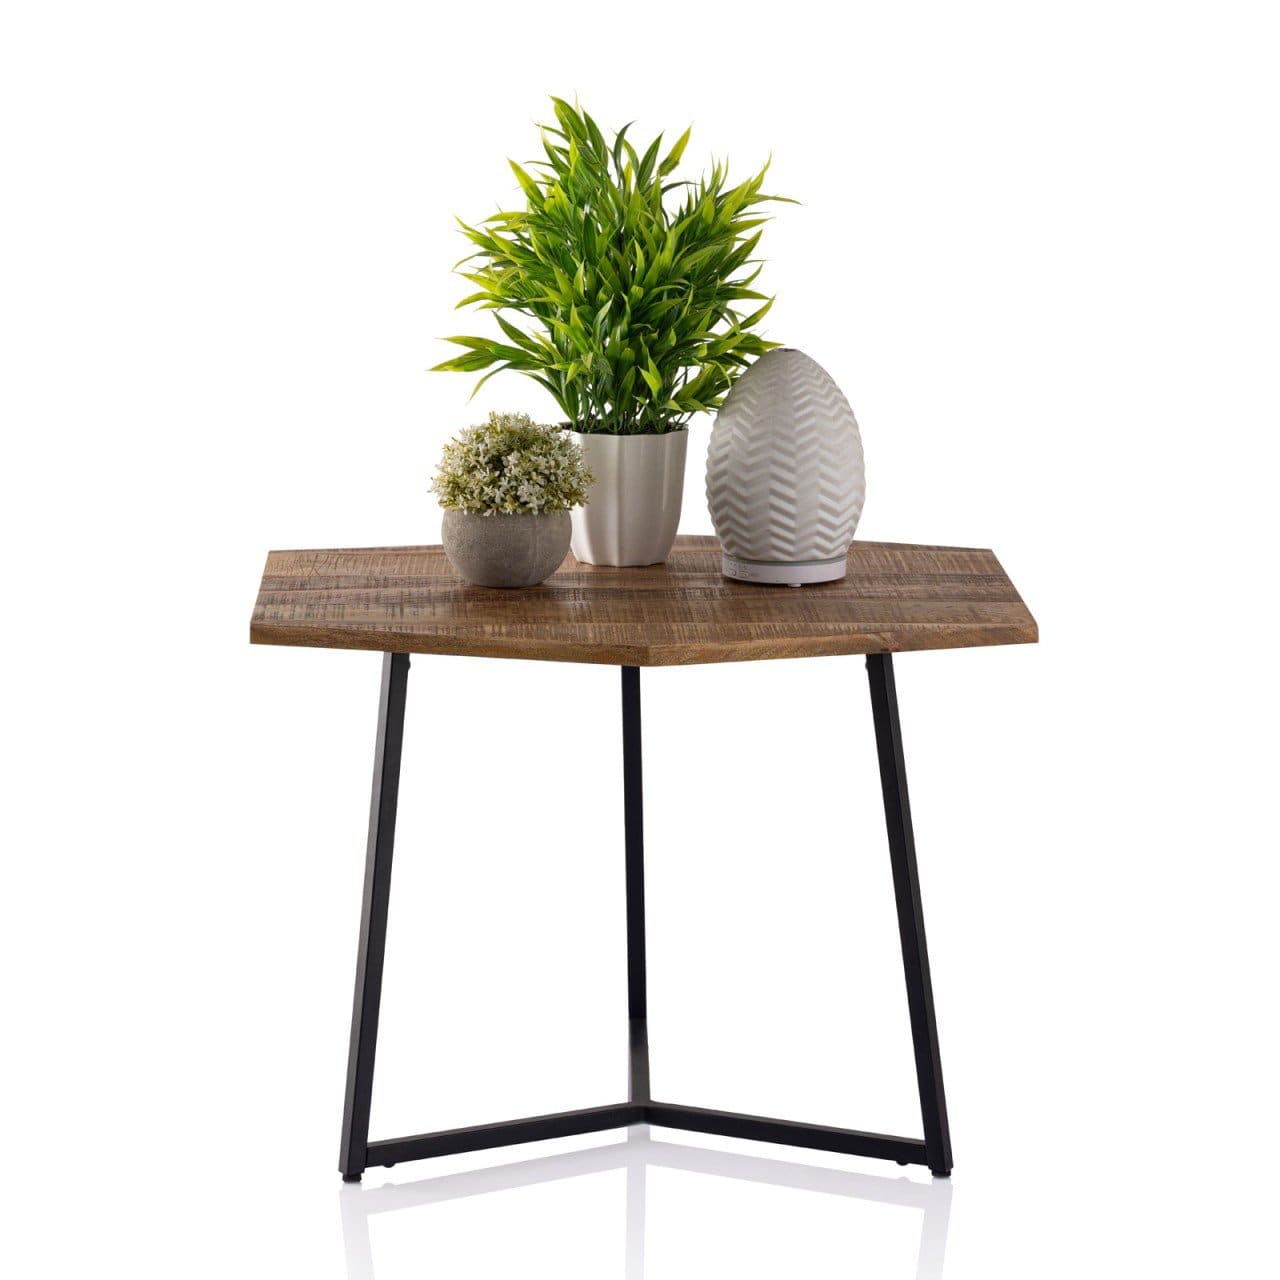 Voglrieder kreatives Wohnen Couchtisch 56 x 48 cm Beistelltisch nachhaltig Wohnzimmer Tisch Inka Metall Gestell schwarz